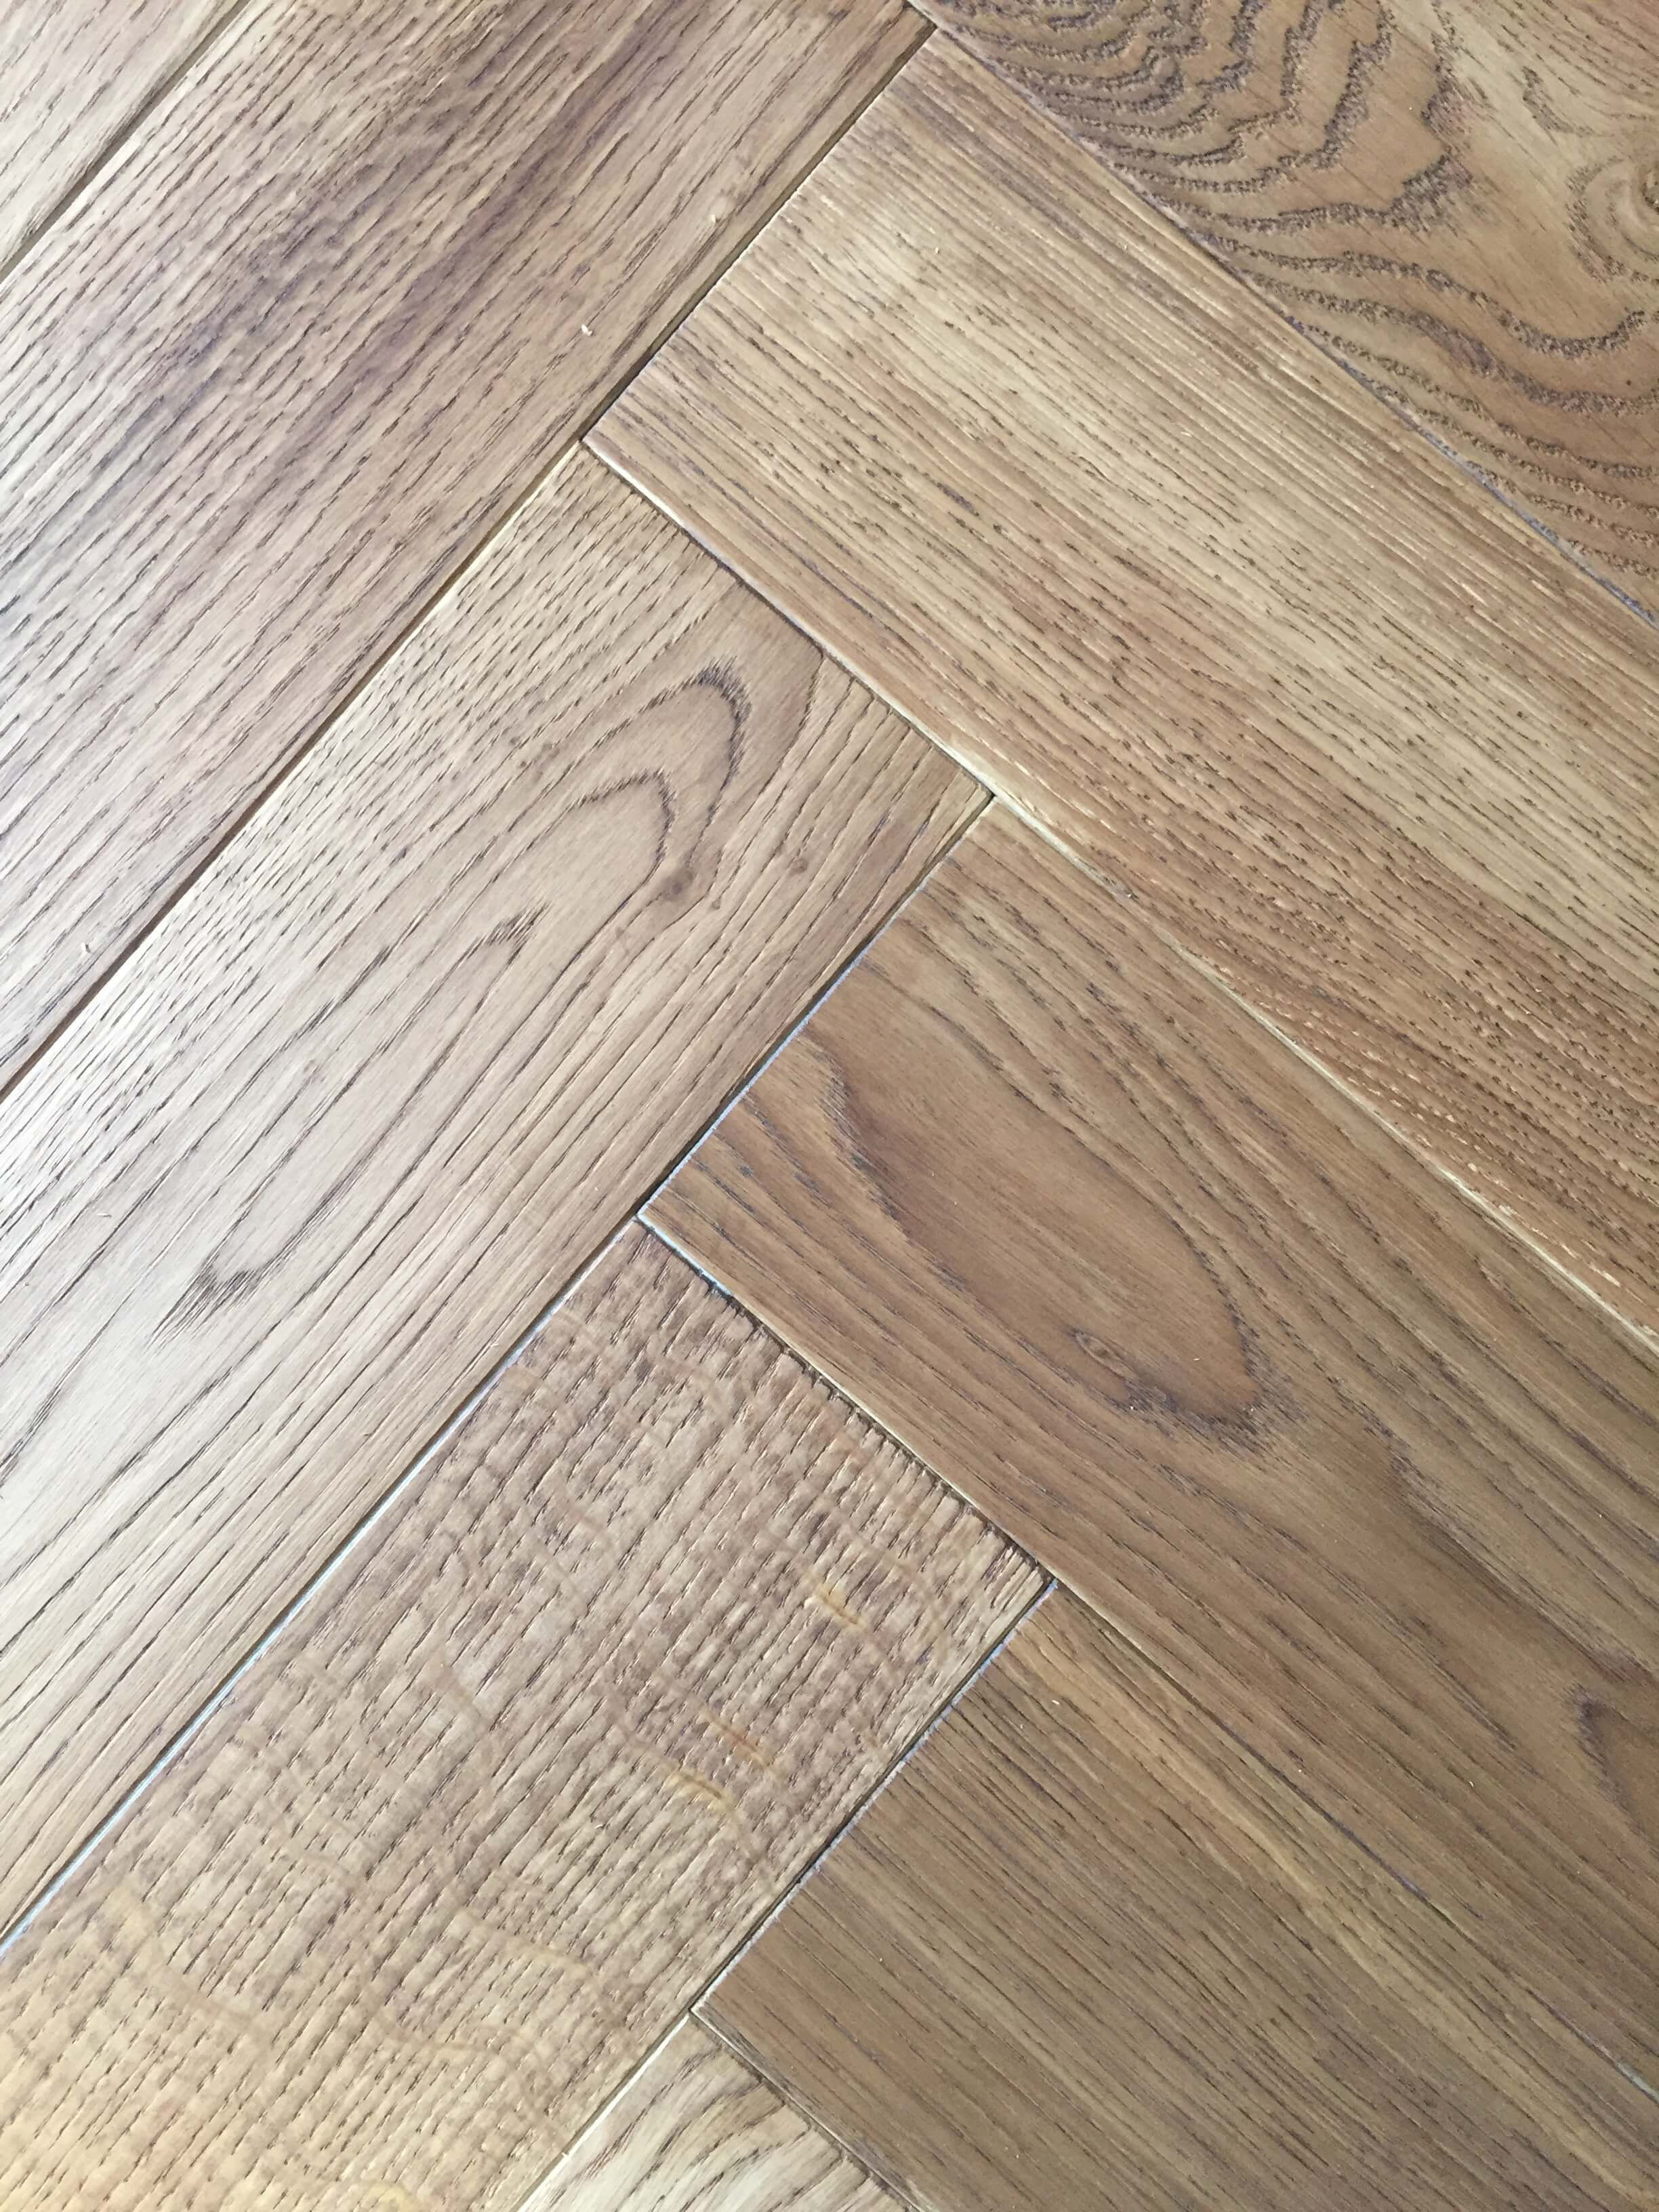 18 Fashionable Hardwood Floor Underlayment Types 2024 free download hardwood floor underlayment types of laminate hardwood flooring beautiful laminate flooring versus intended for 40 light oak engineered hardwood flooring ideas